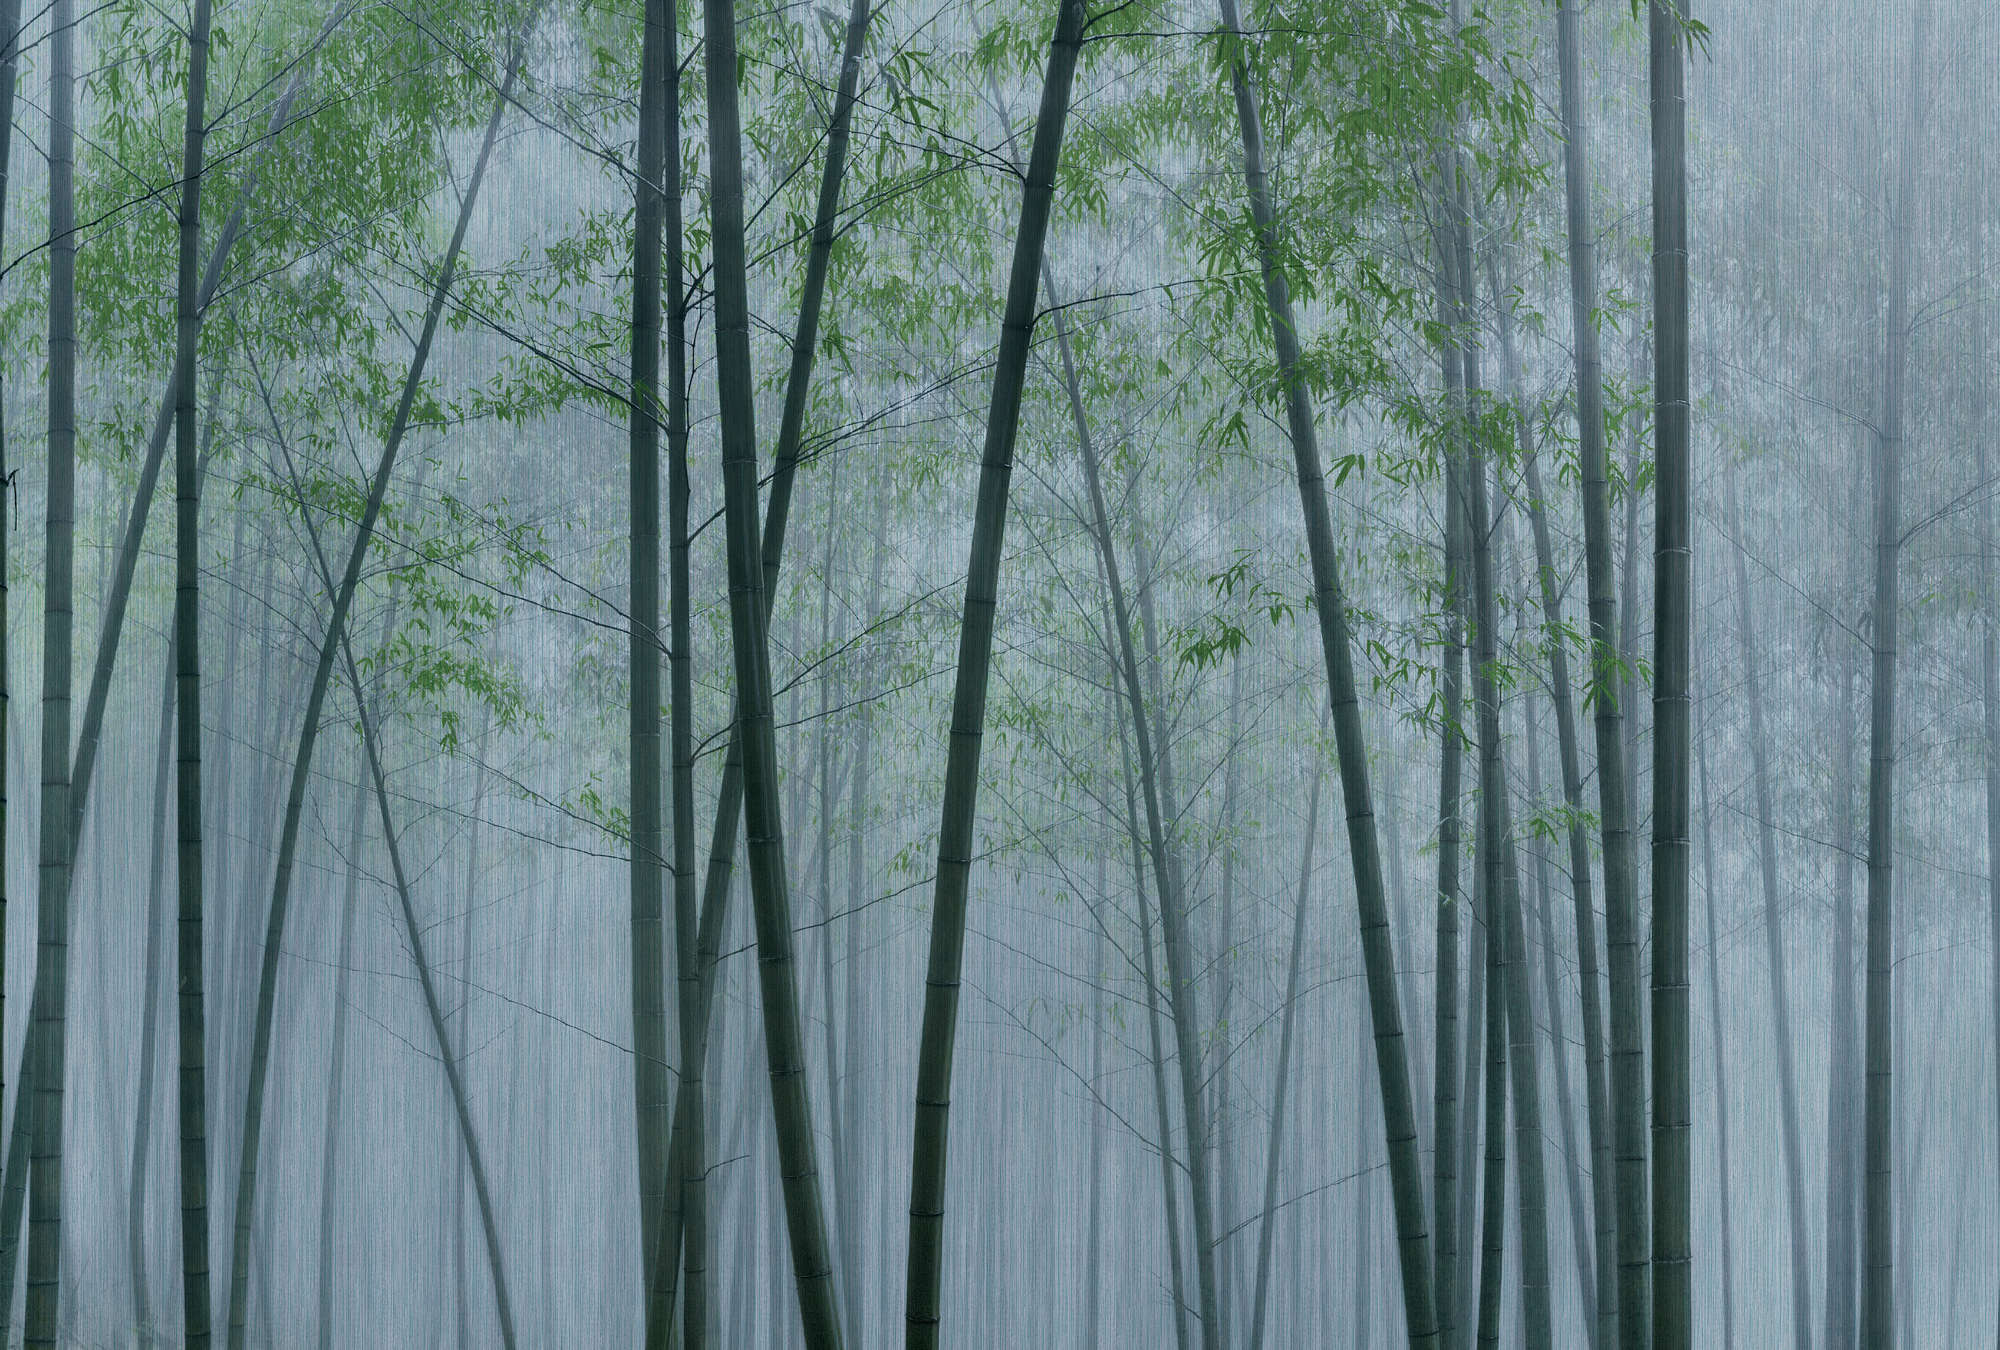             In the Bamboo 2 - Papier peint forêt de bambous à l'aube
        